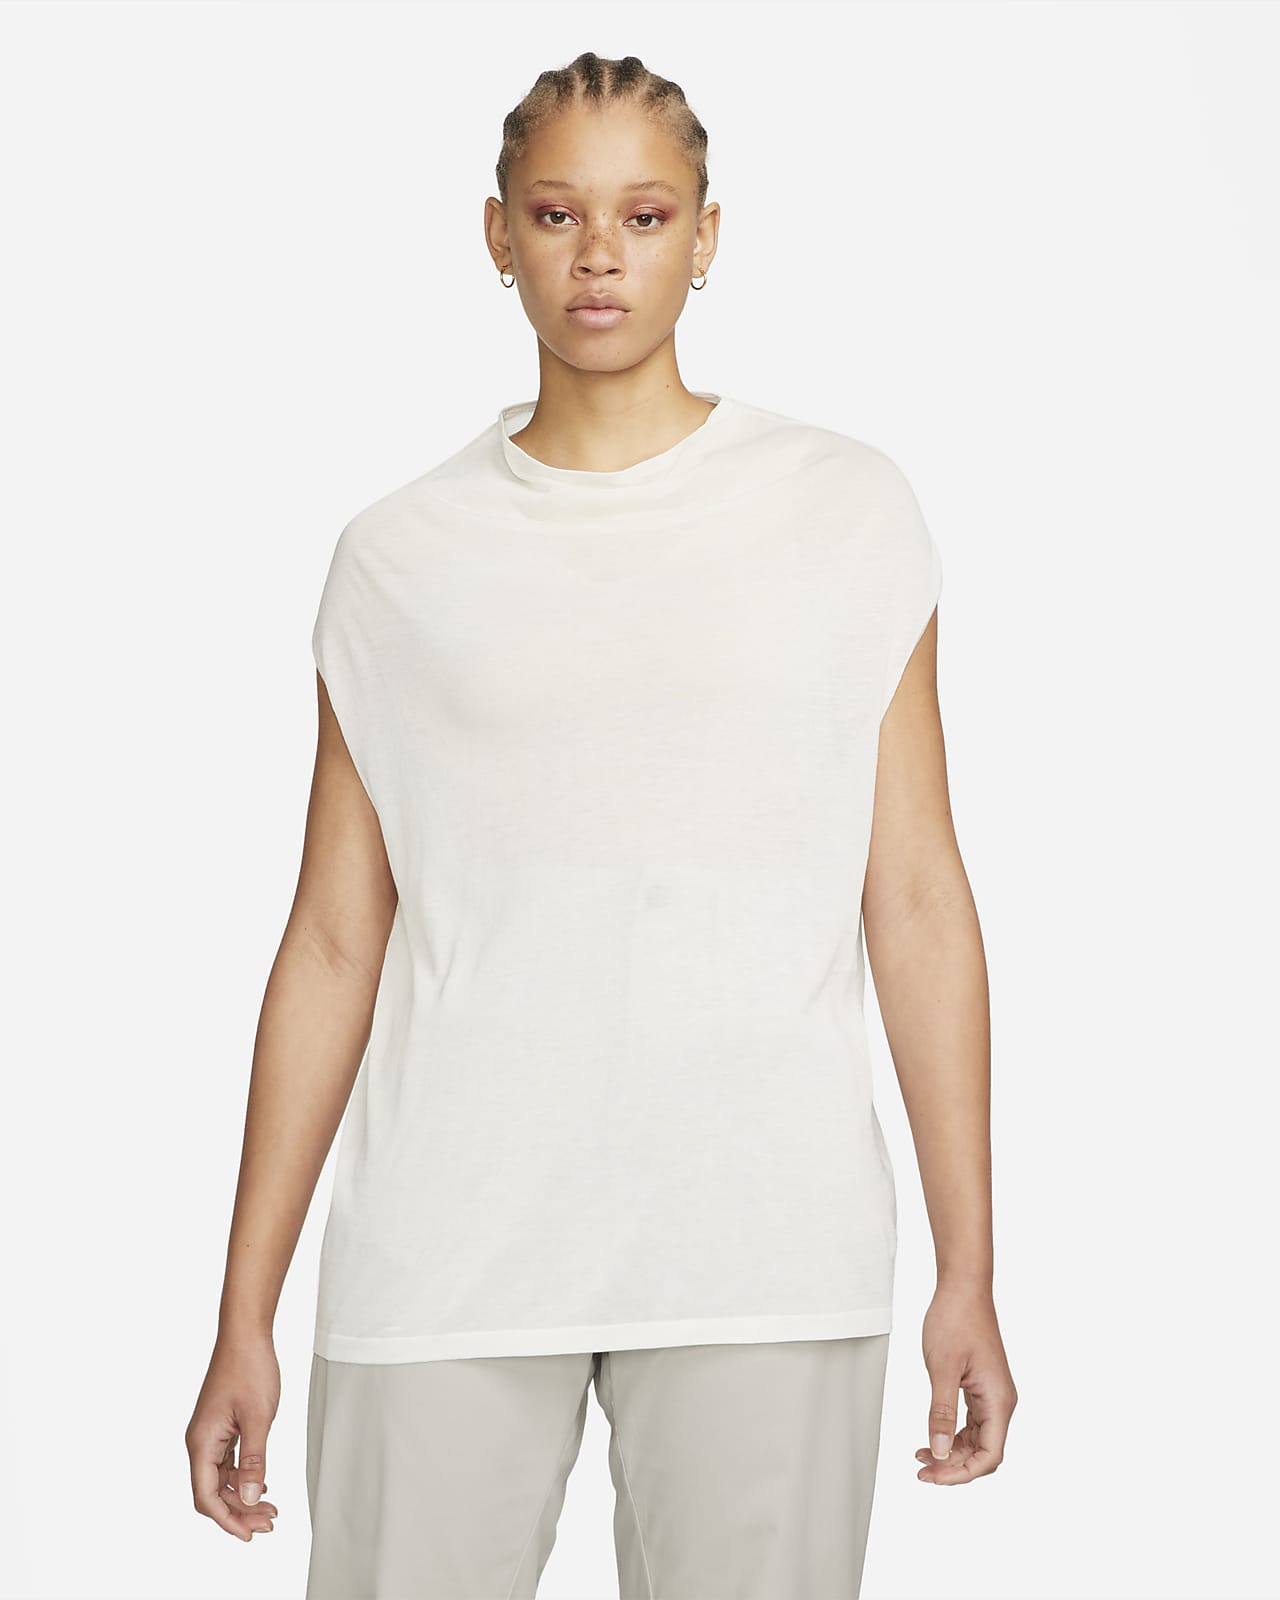 Imitación Granjero ceja Camiseta de tirantes de cuello alto para mujer Nike ESC. Nike.com